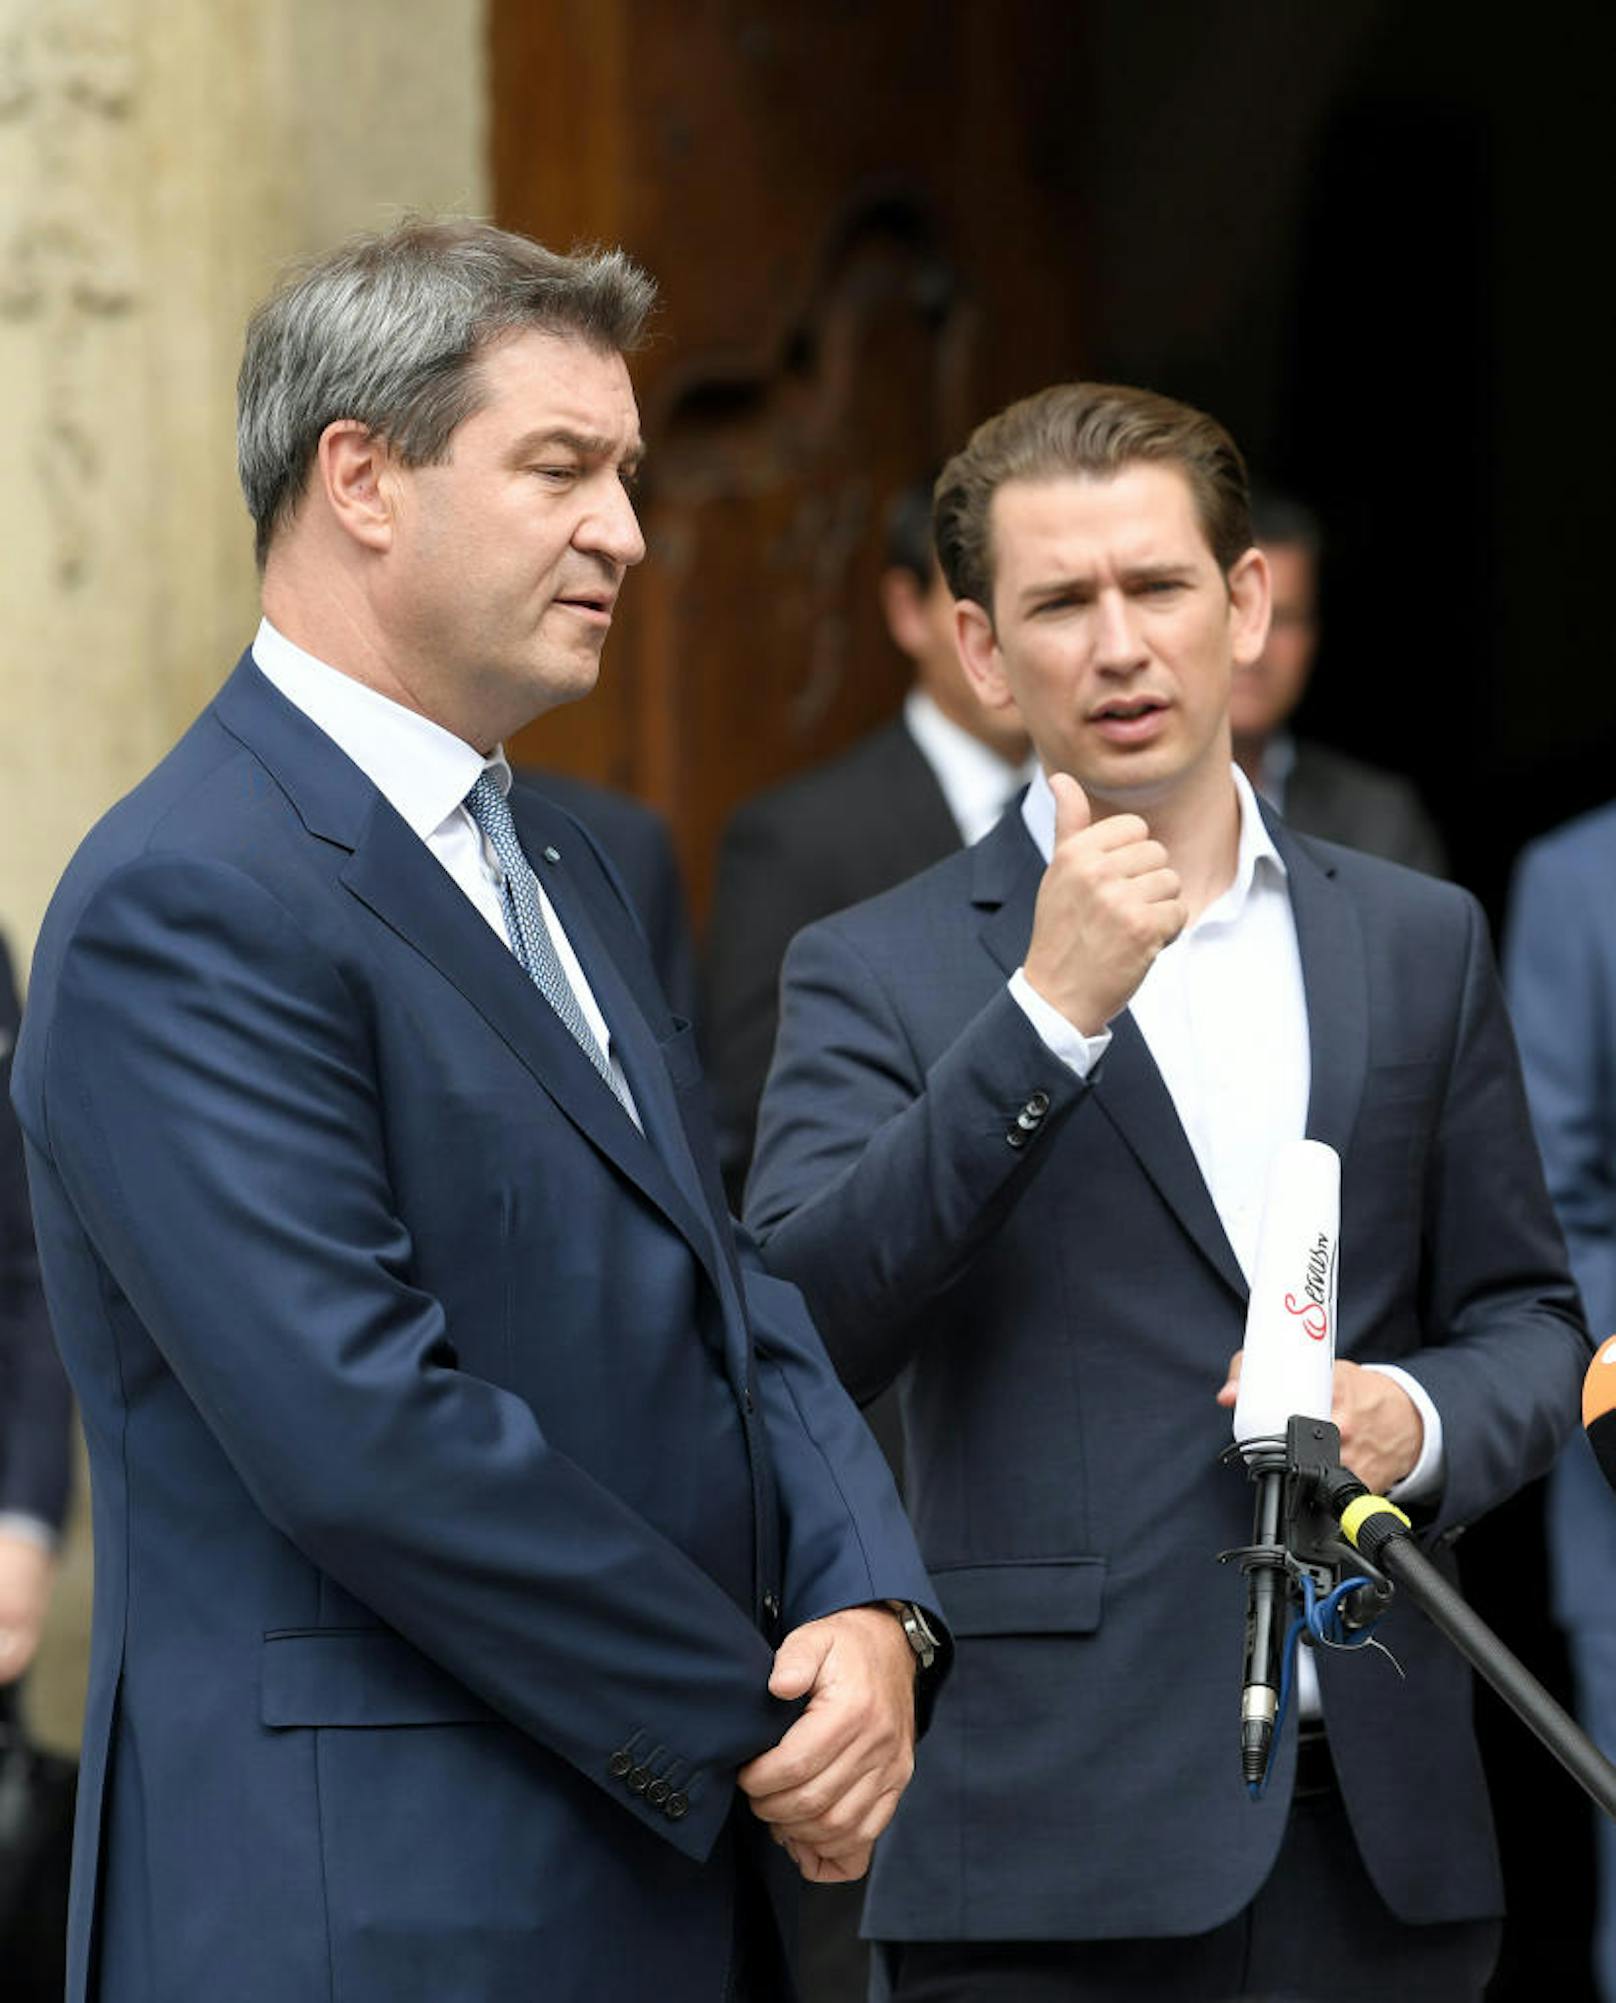 Bayerns Ministerpräsident Markus Söder (l.) und BK Sebastian Kurz (2.v.r.) m Rahmen der "Regierungskonferenz" mit der Bayrischen Landesregierung in Linz am Mittwoch, 20 Juni 2018.